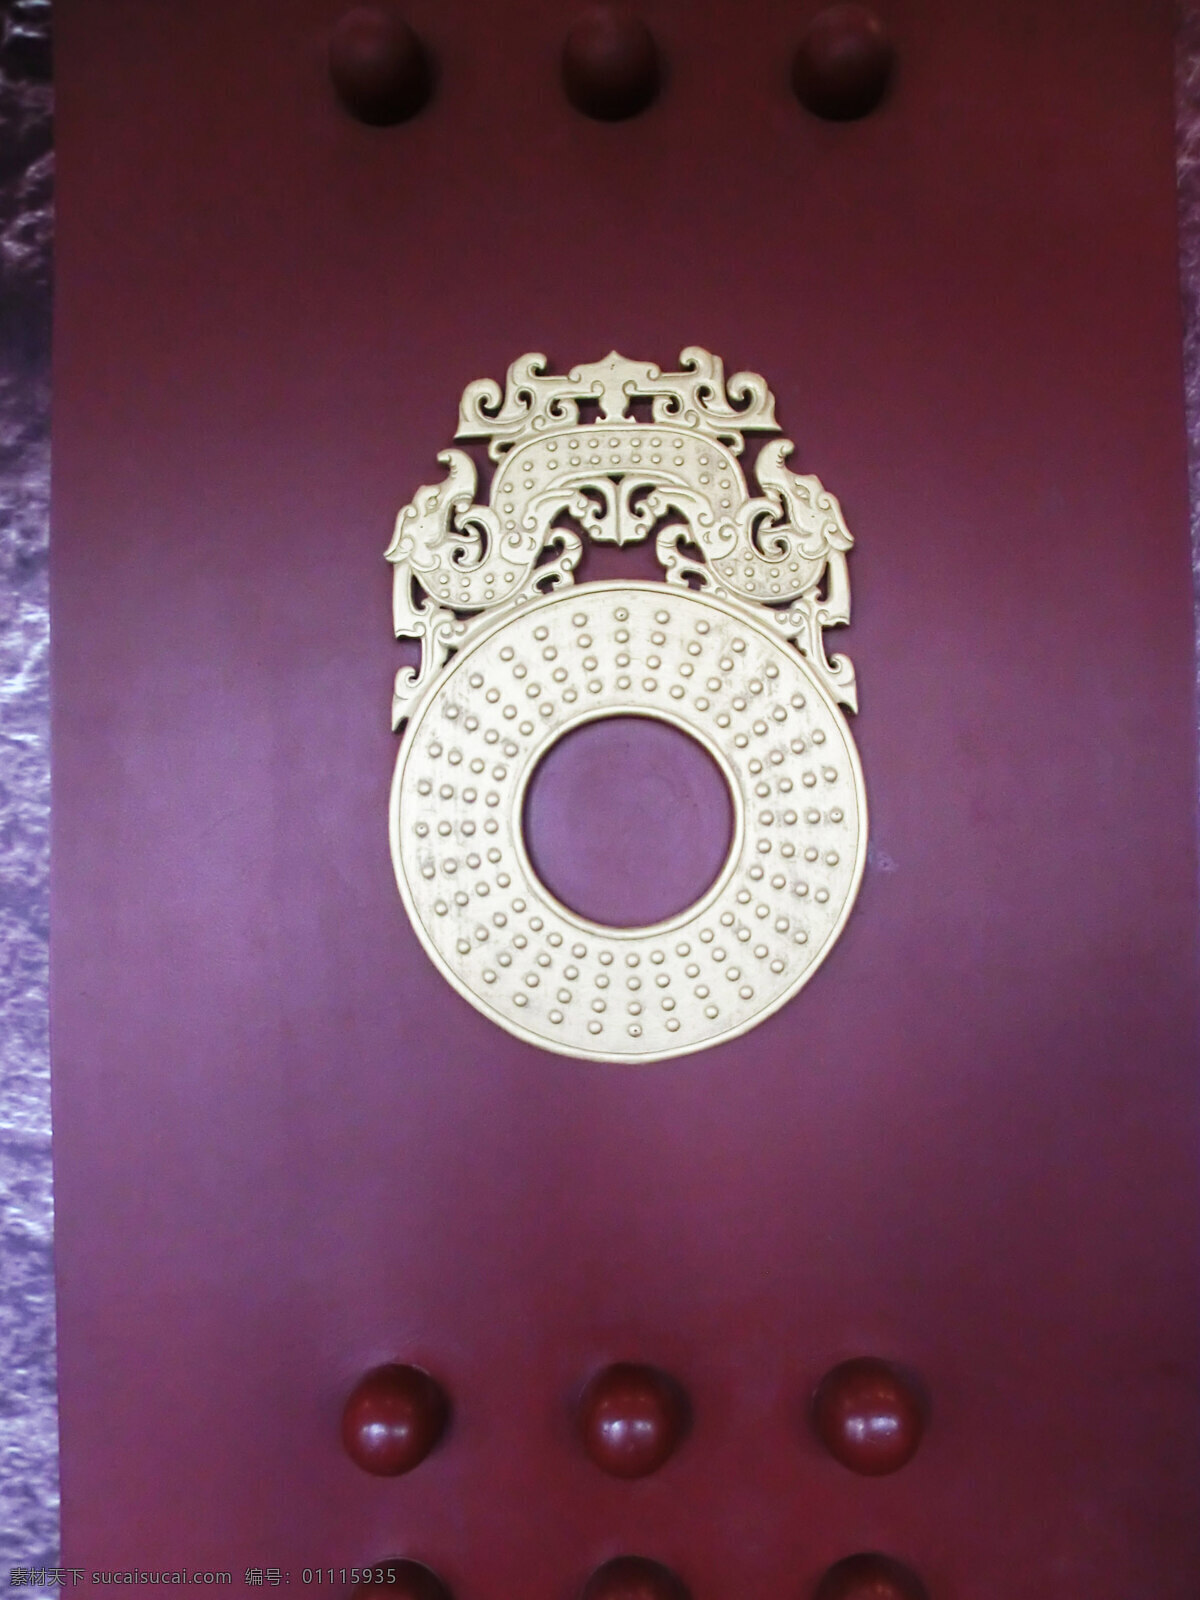 徐州 狮子山 汉 文化 标志 汉文化 楚王陵 古门 凝固的音符 建筑摄影 门装饰 建筑园林